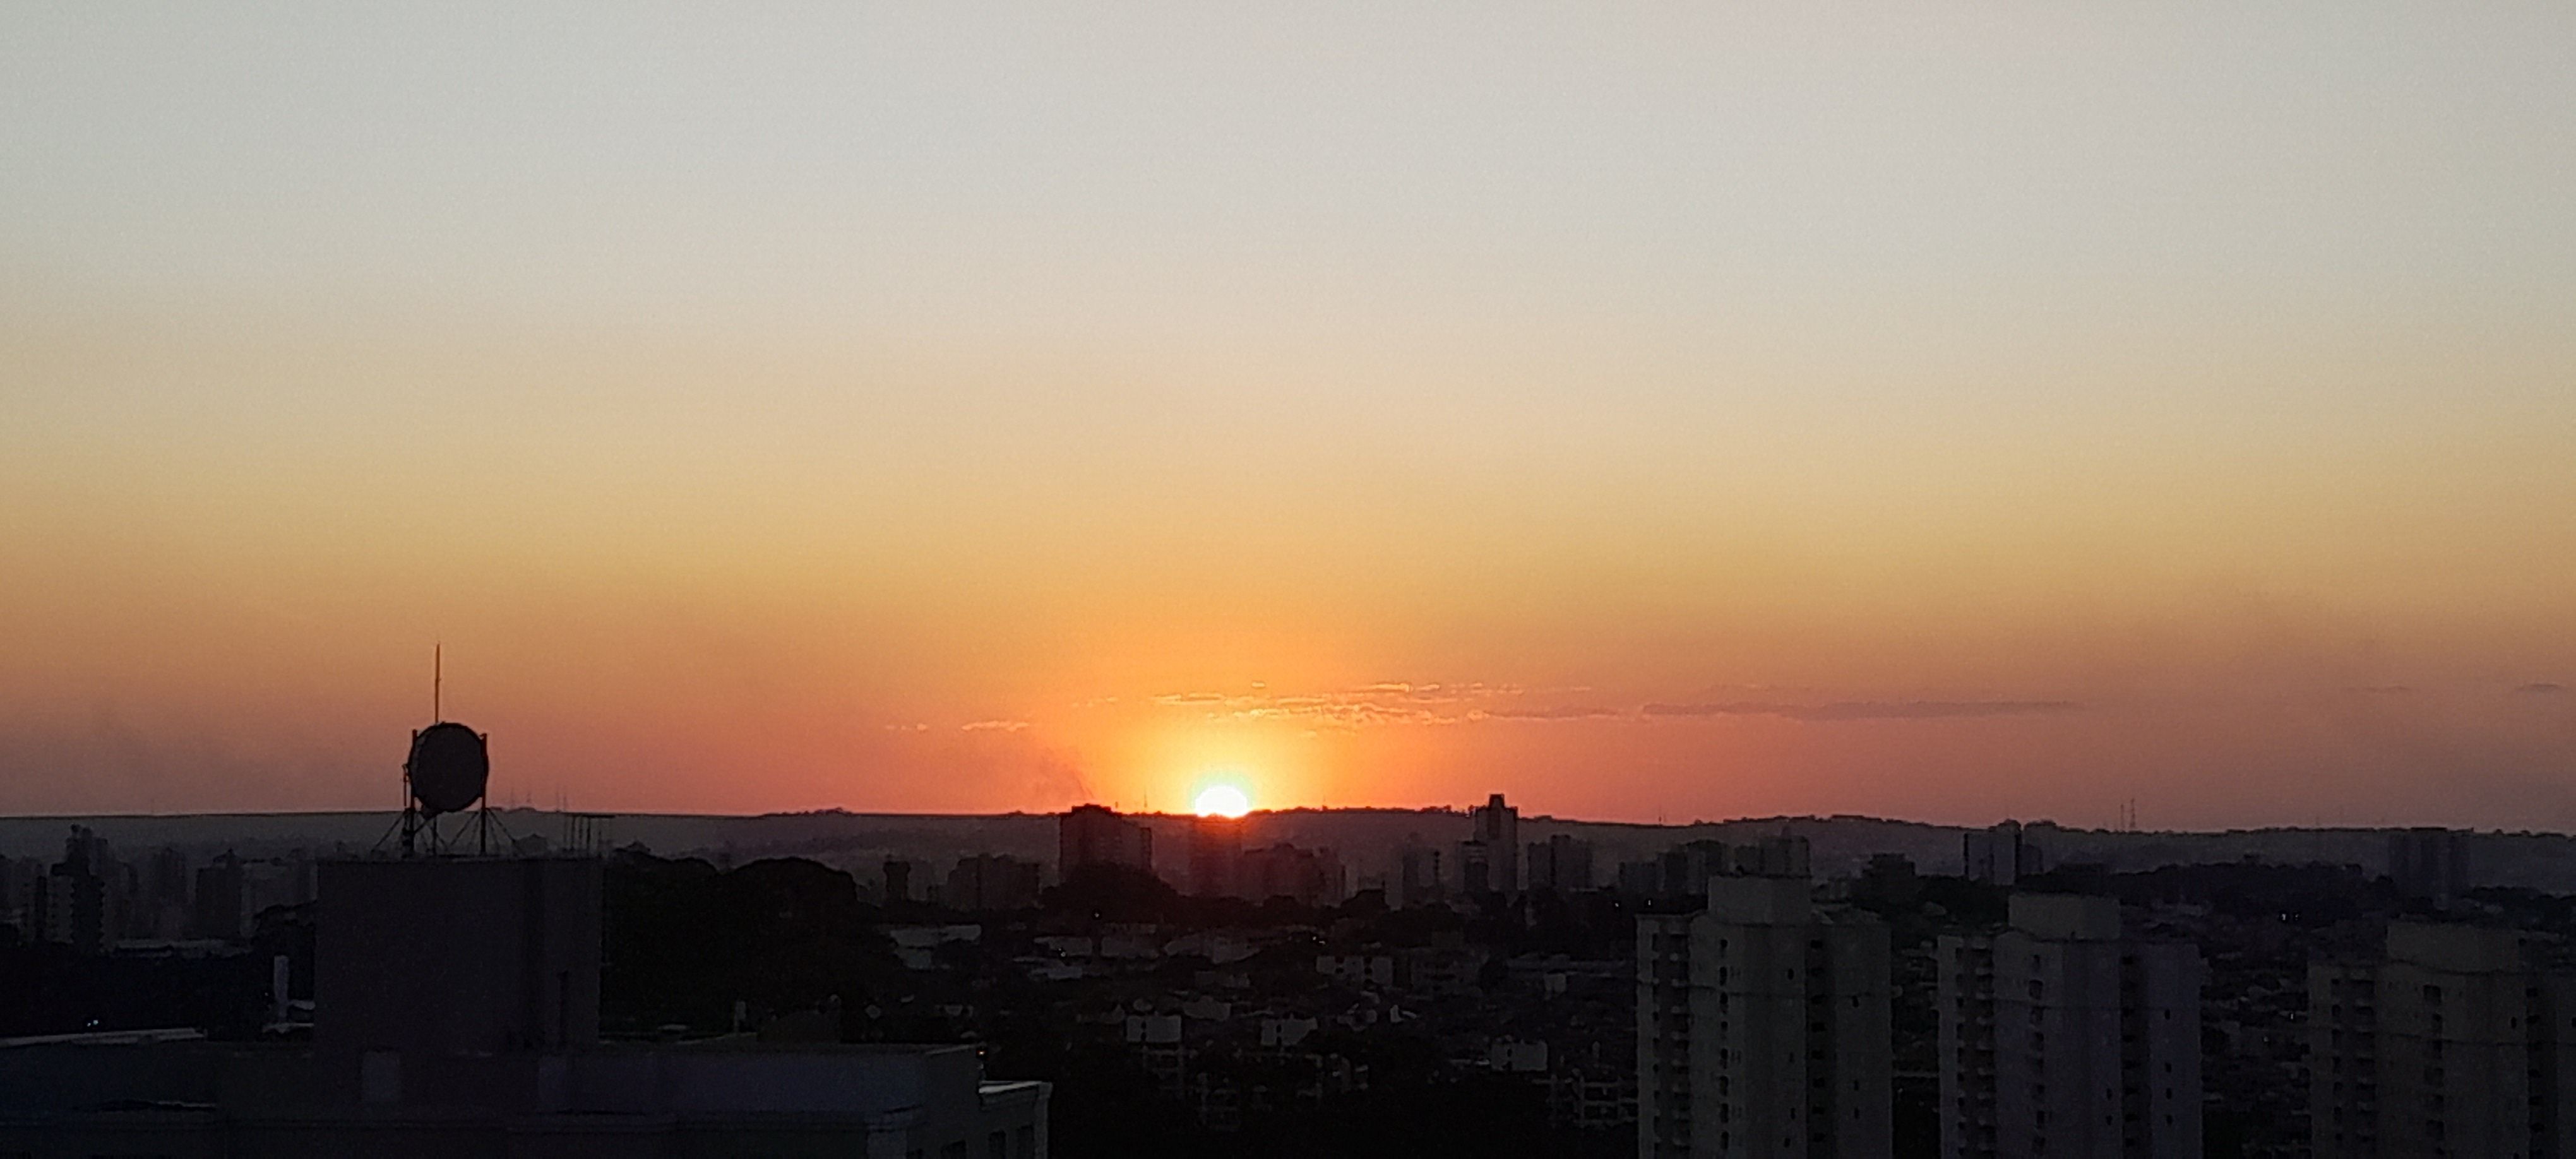 Sol em Ribeirão Preto